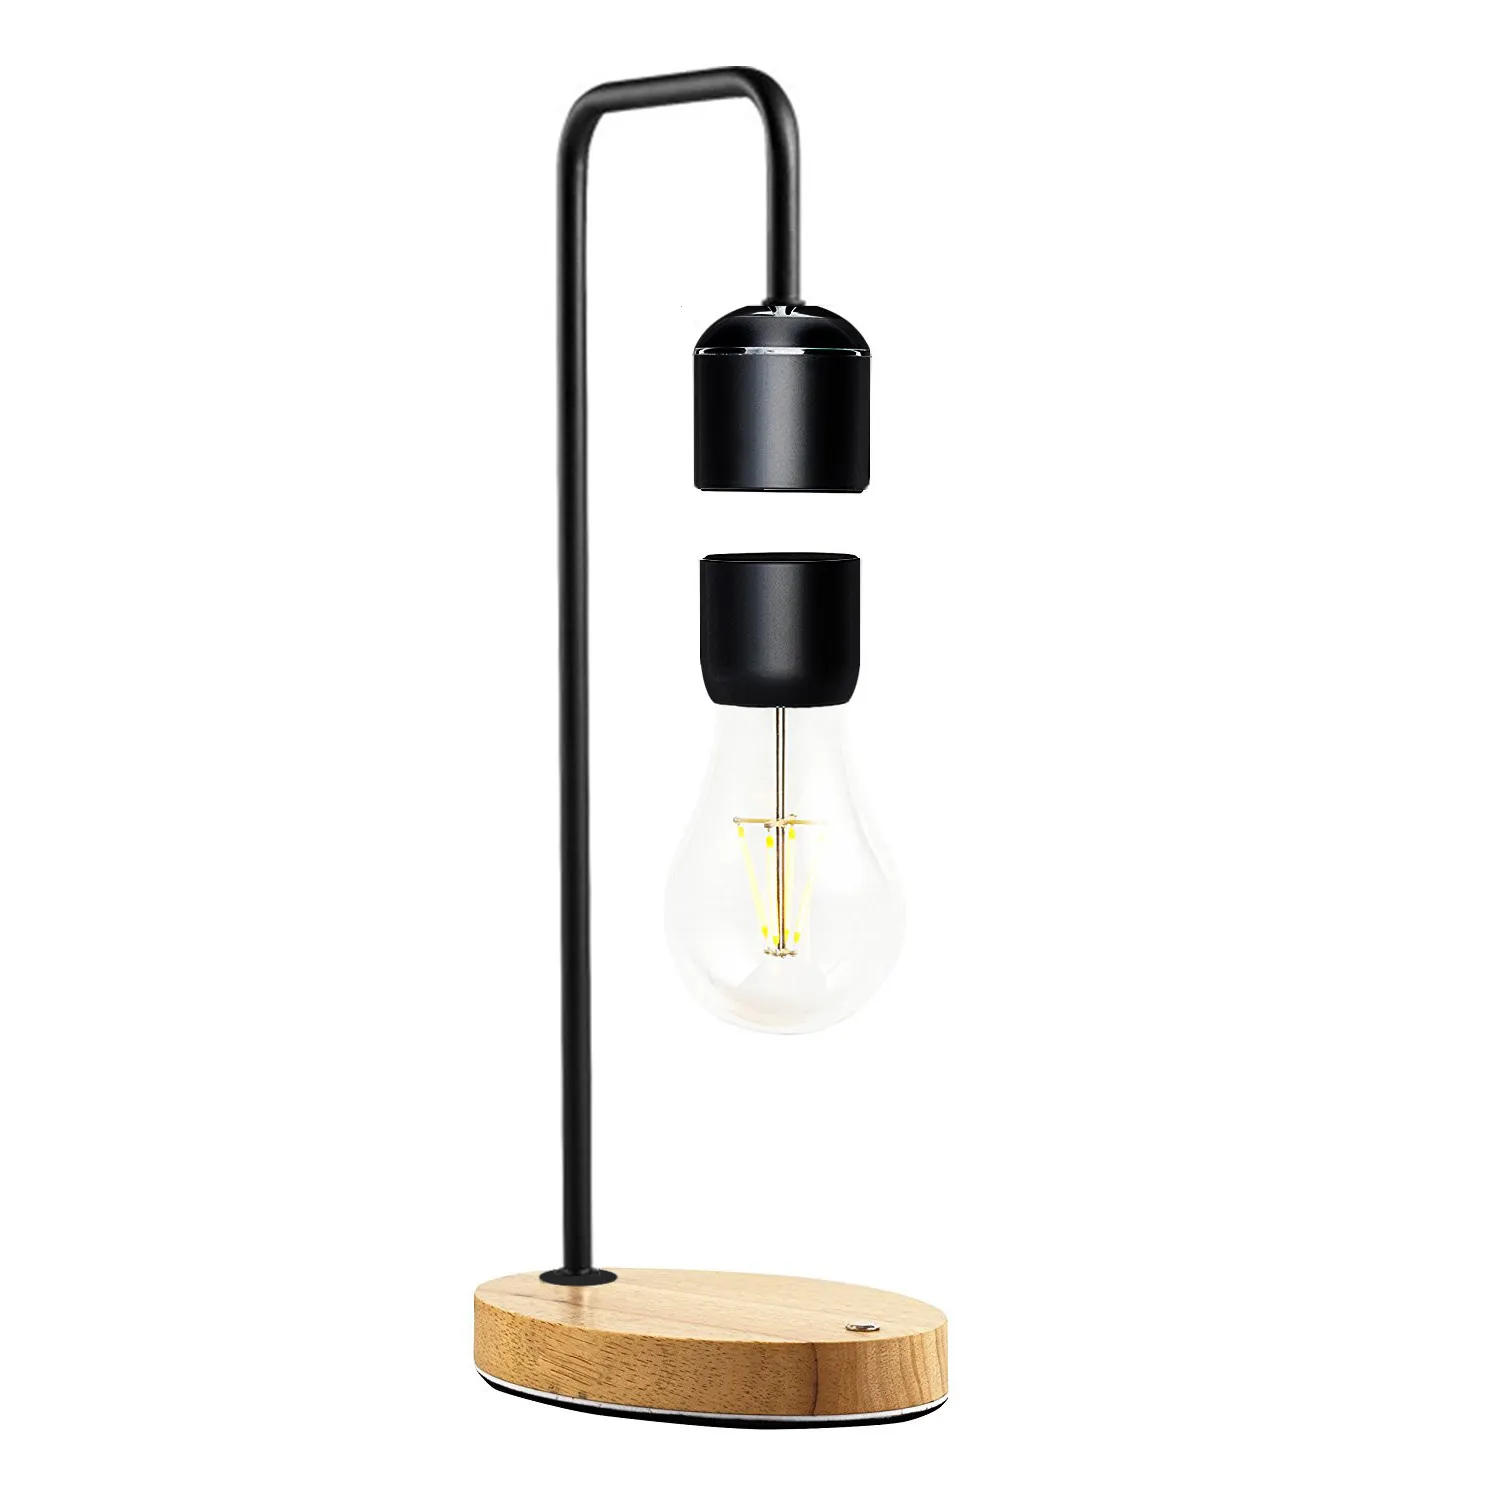 Levitazione magnetica galleggiante levitare lampadina elettromagnetica notte lampara lampada da tavolo in legno sospeso levitazione ha condotto la lampada